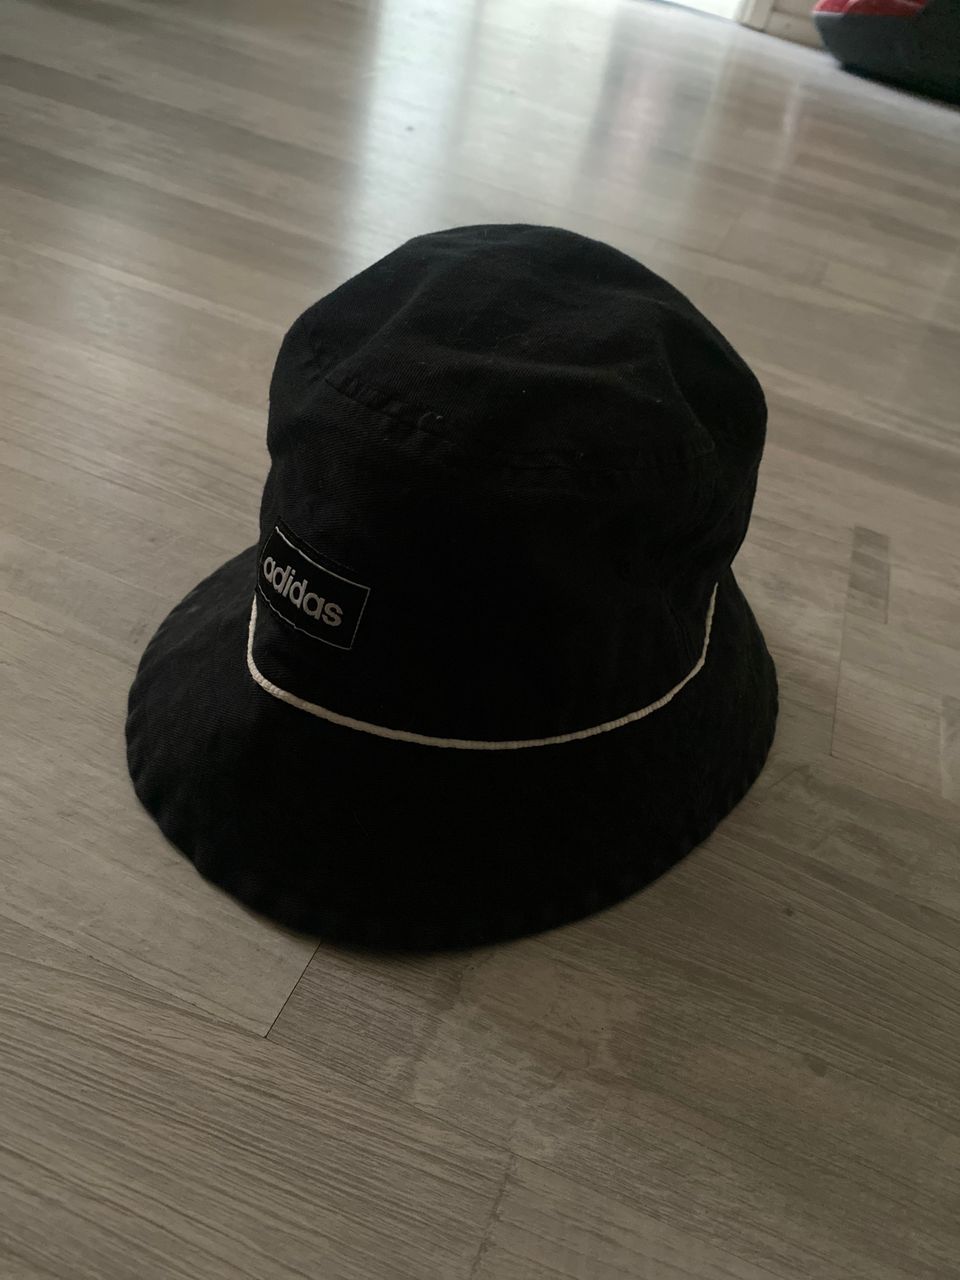 Adidas hattu